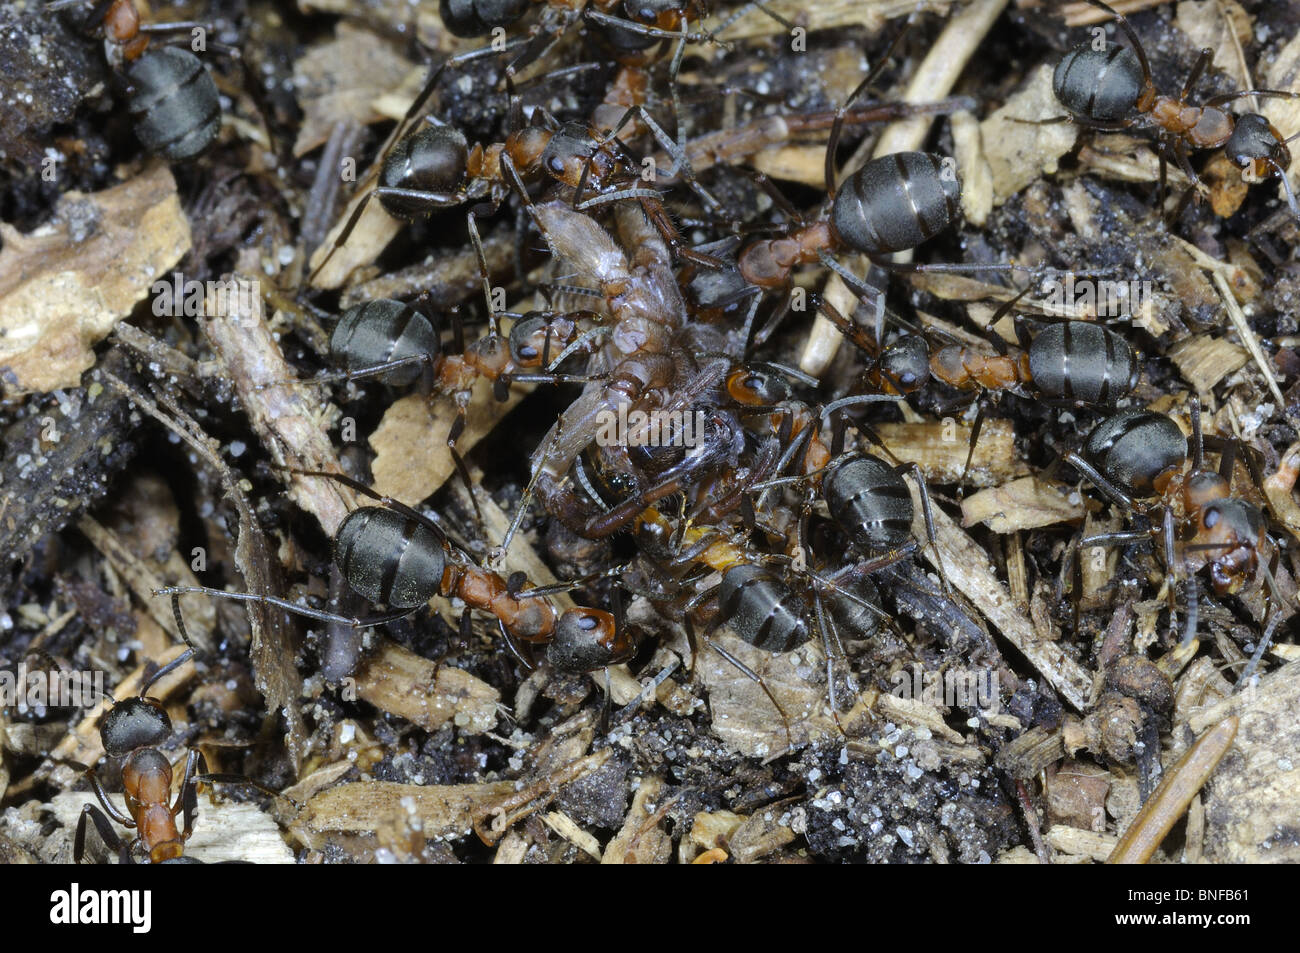 Rouge du sud les fourmis des bois (Formica rufa) attaquer une araignée sur la fourmilière Banque D'Images